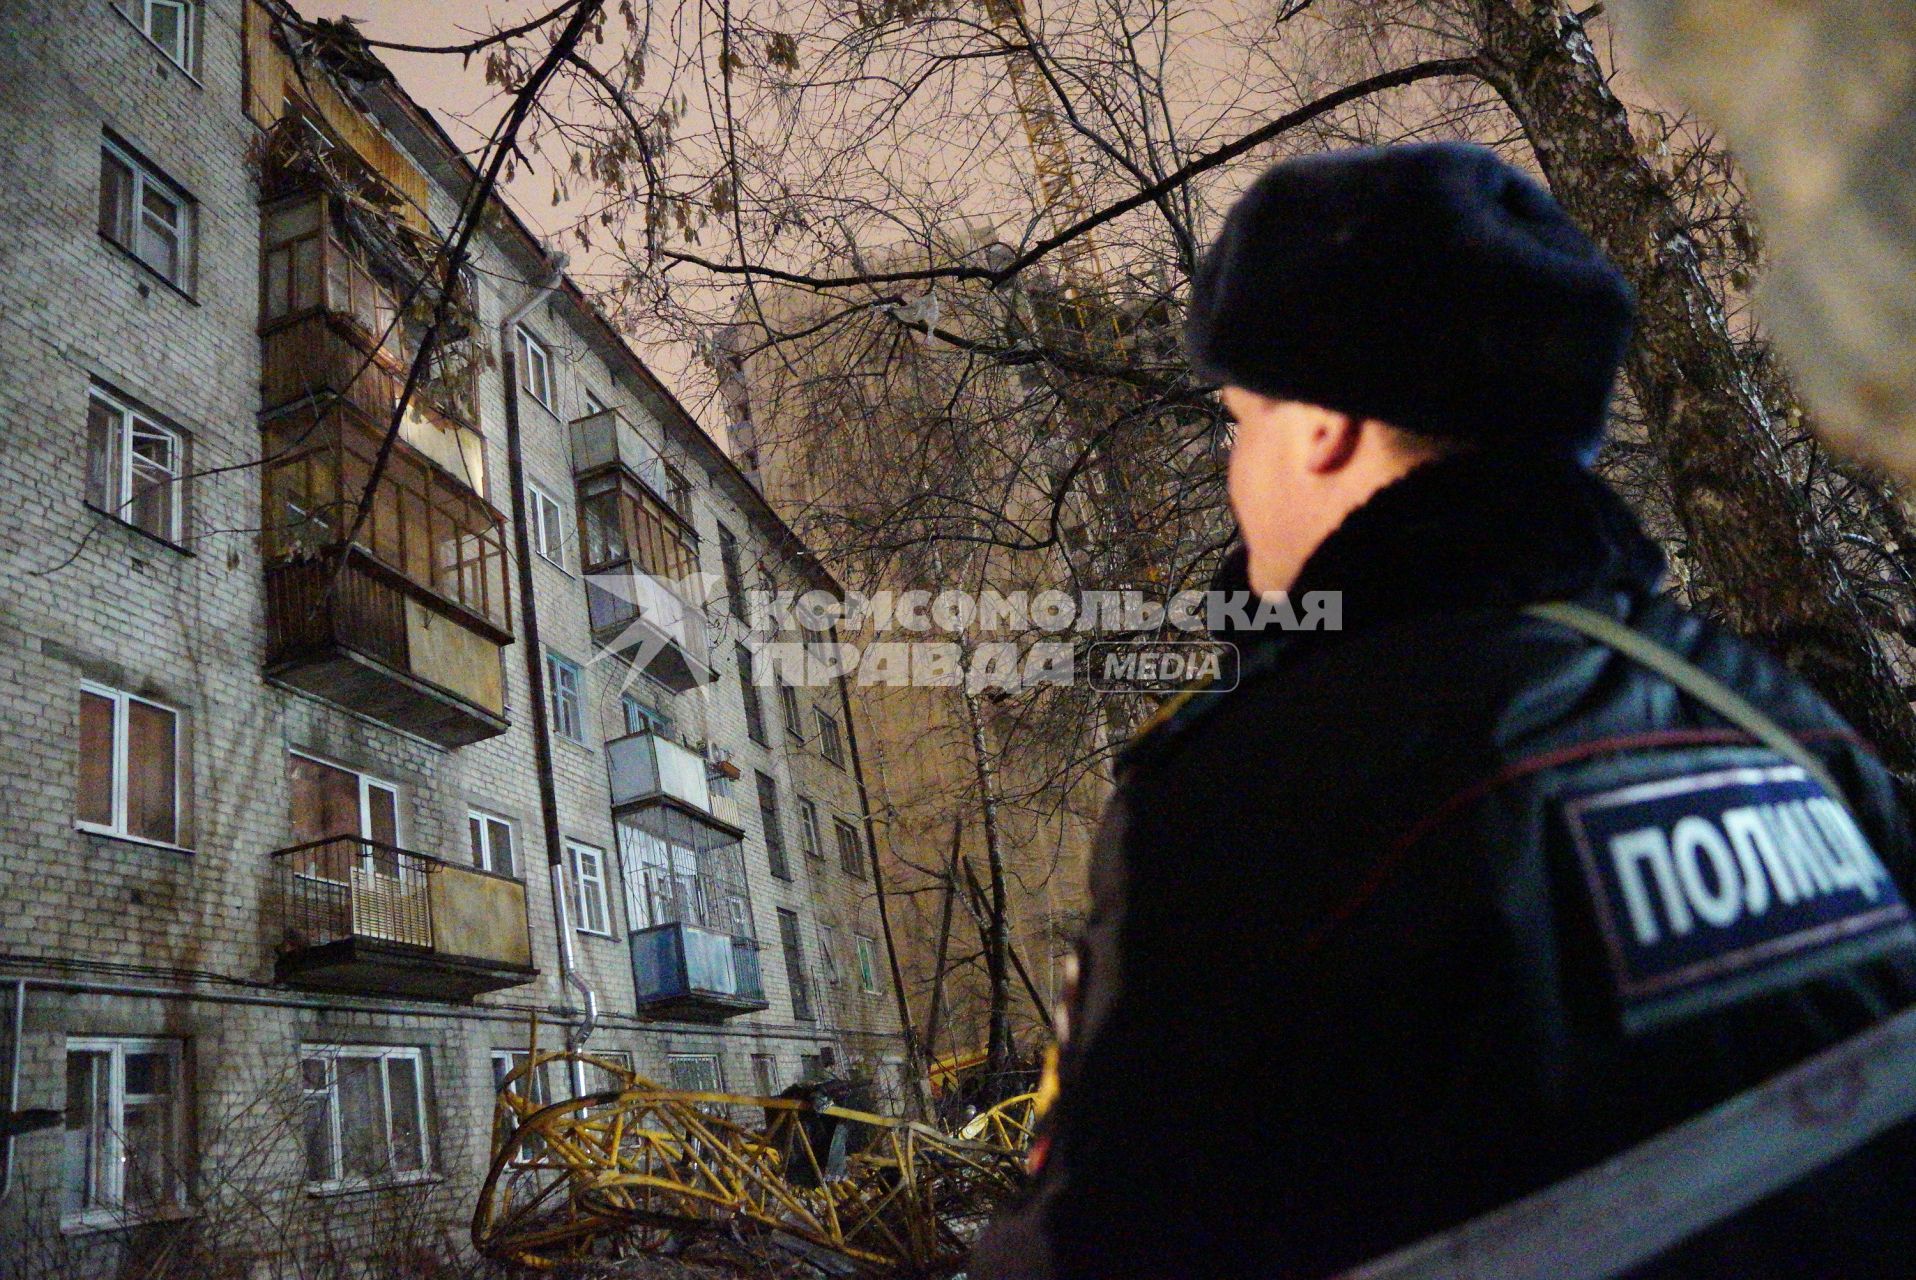 Екатеринбург. Сотрудник полиции на месте падения строительного крана на жилой дом.